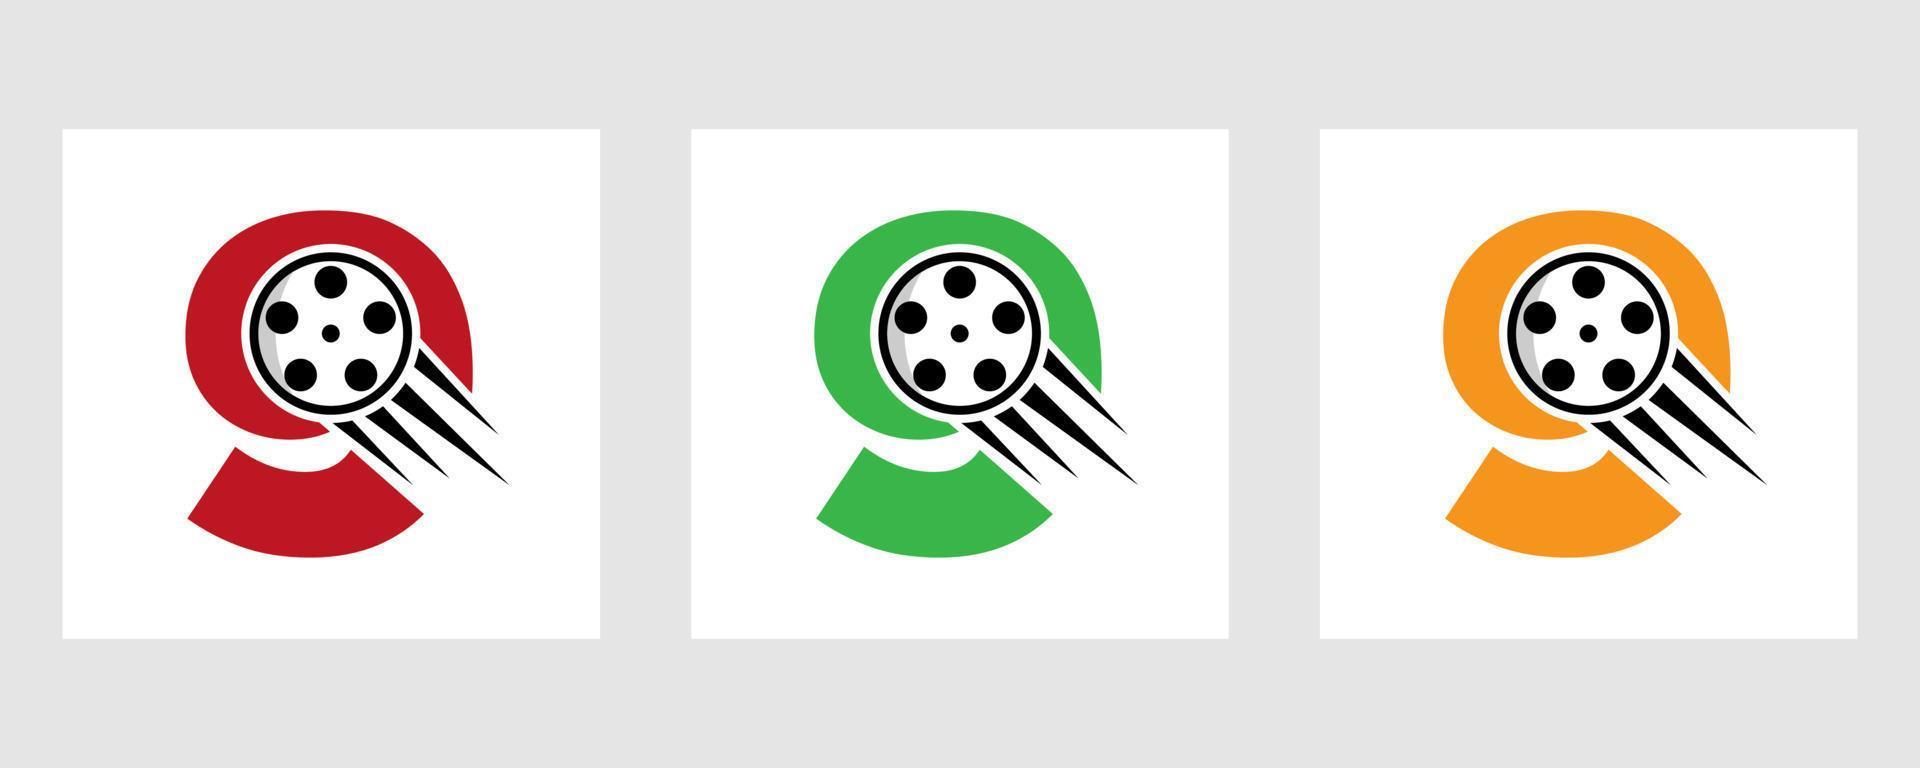 buchstabe 9 film logo konzept mit filmrolle für medienzeichen, filmregisseur symbol vektor